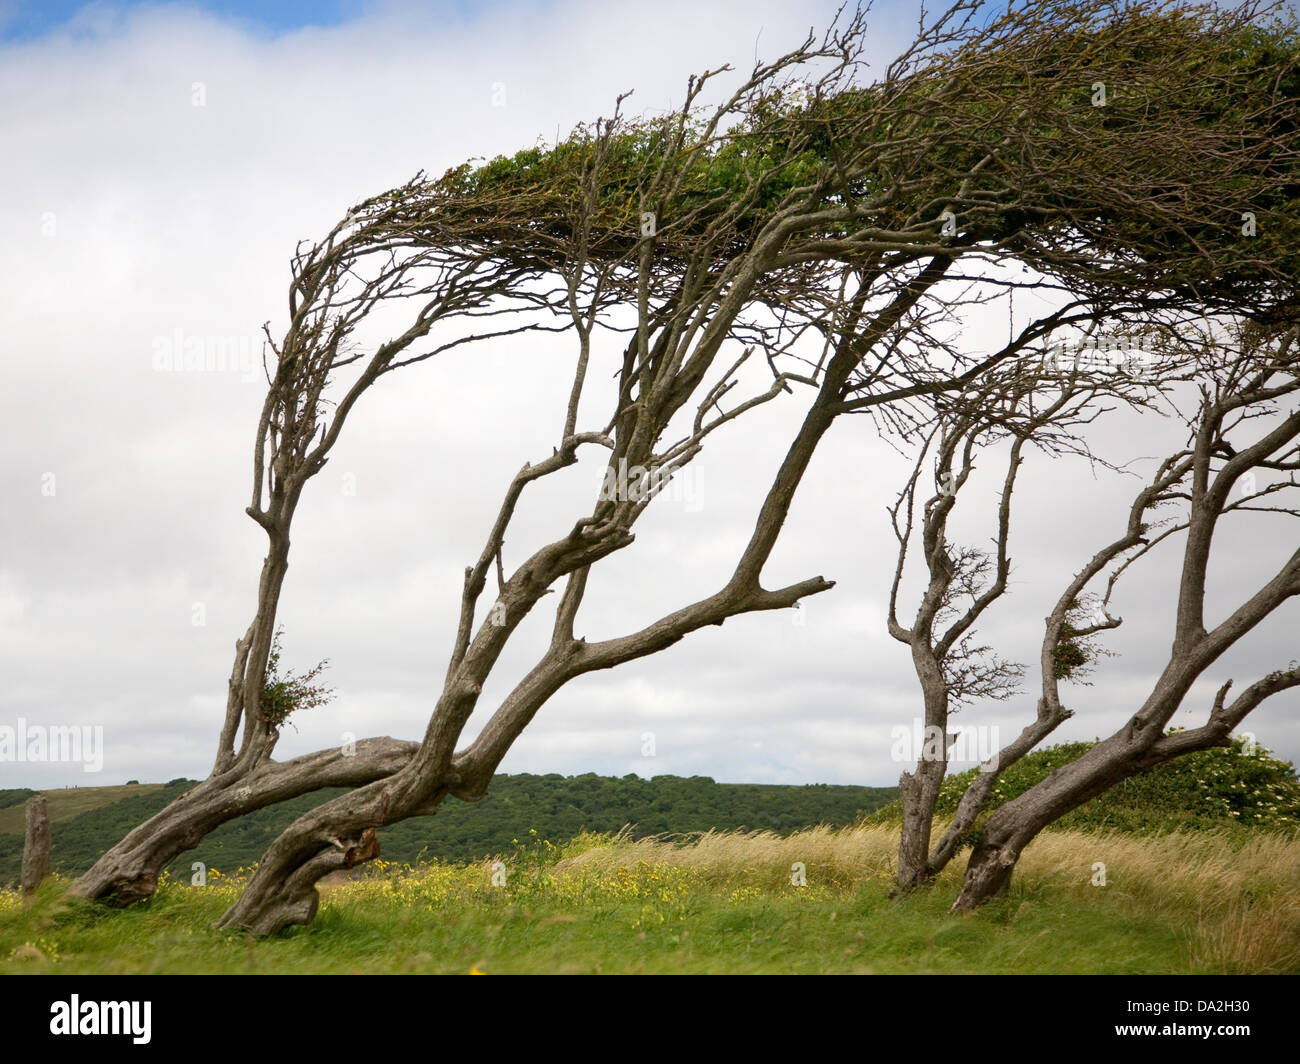 Los árboles por el viento en la bahía de arena, Kewstoke, Somerset, Inglaterra Foto de stock